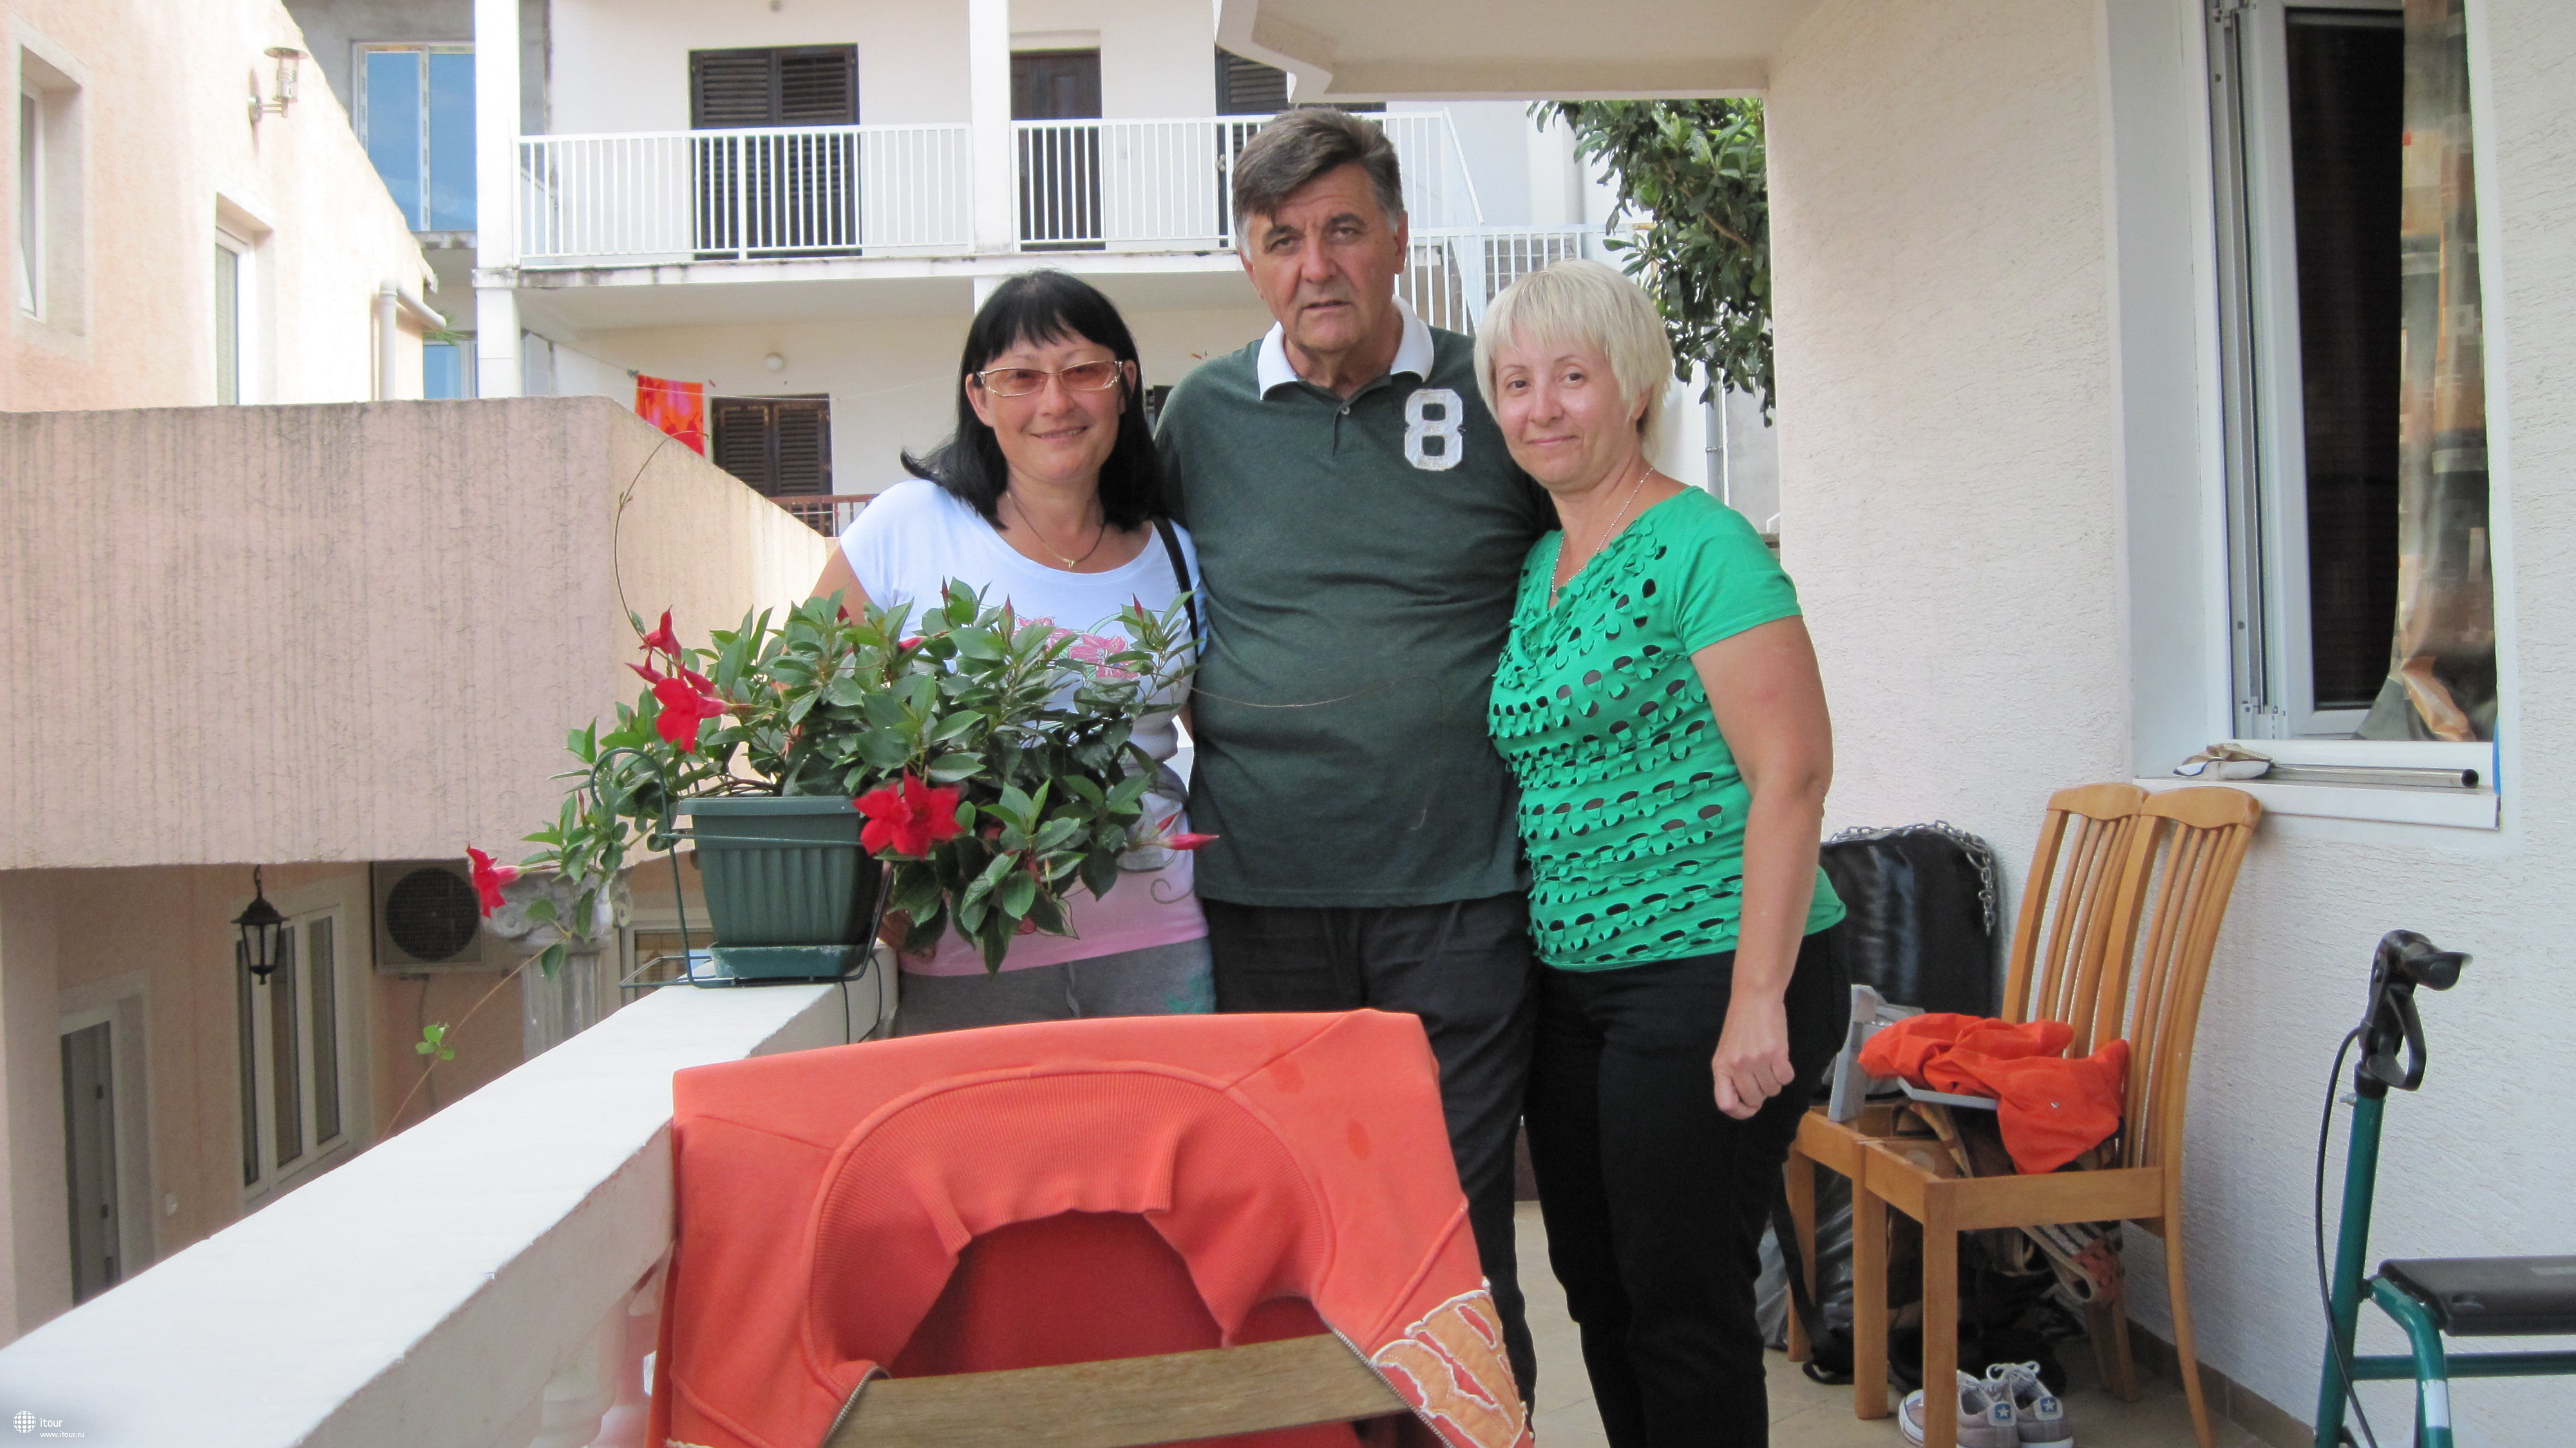 А это мы с Милованом - он и его жена Славица - хозяева виллы 